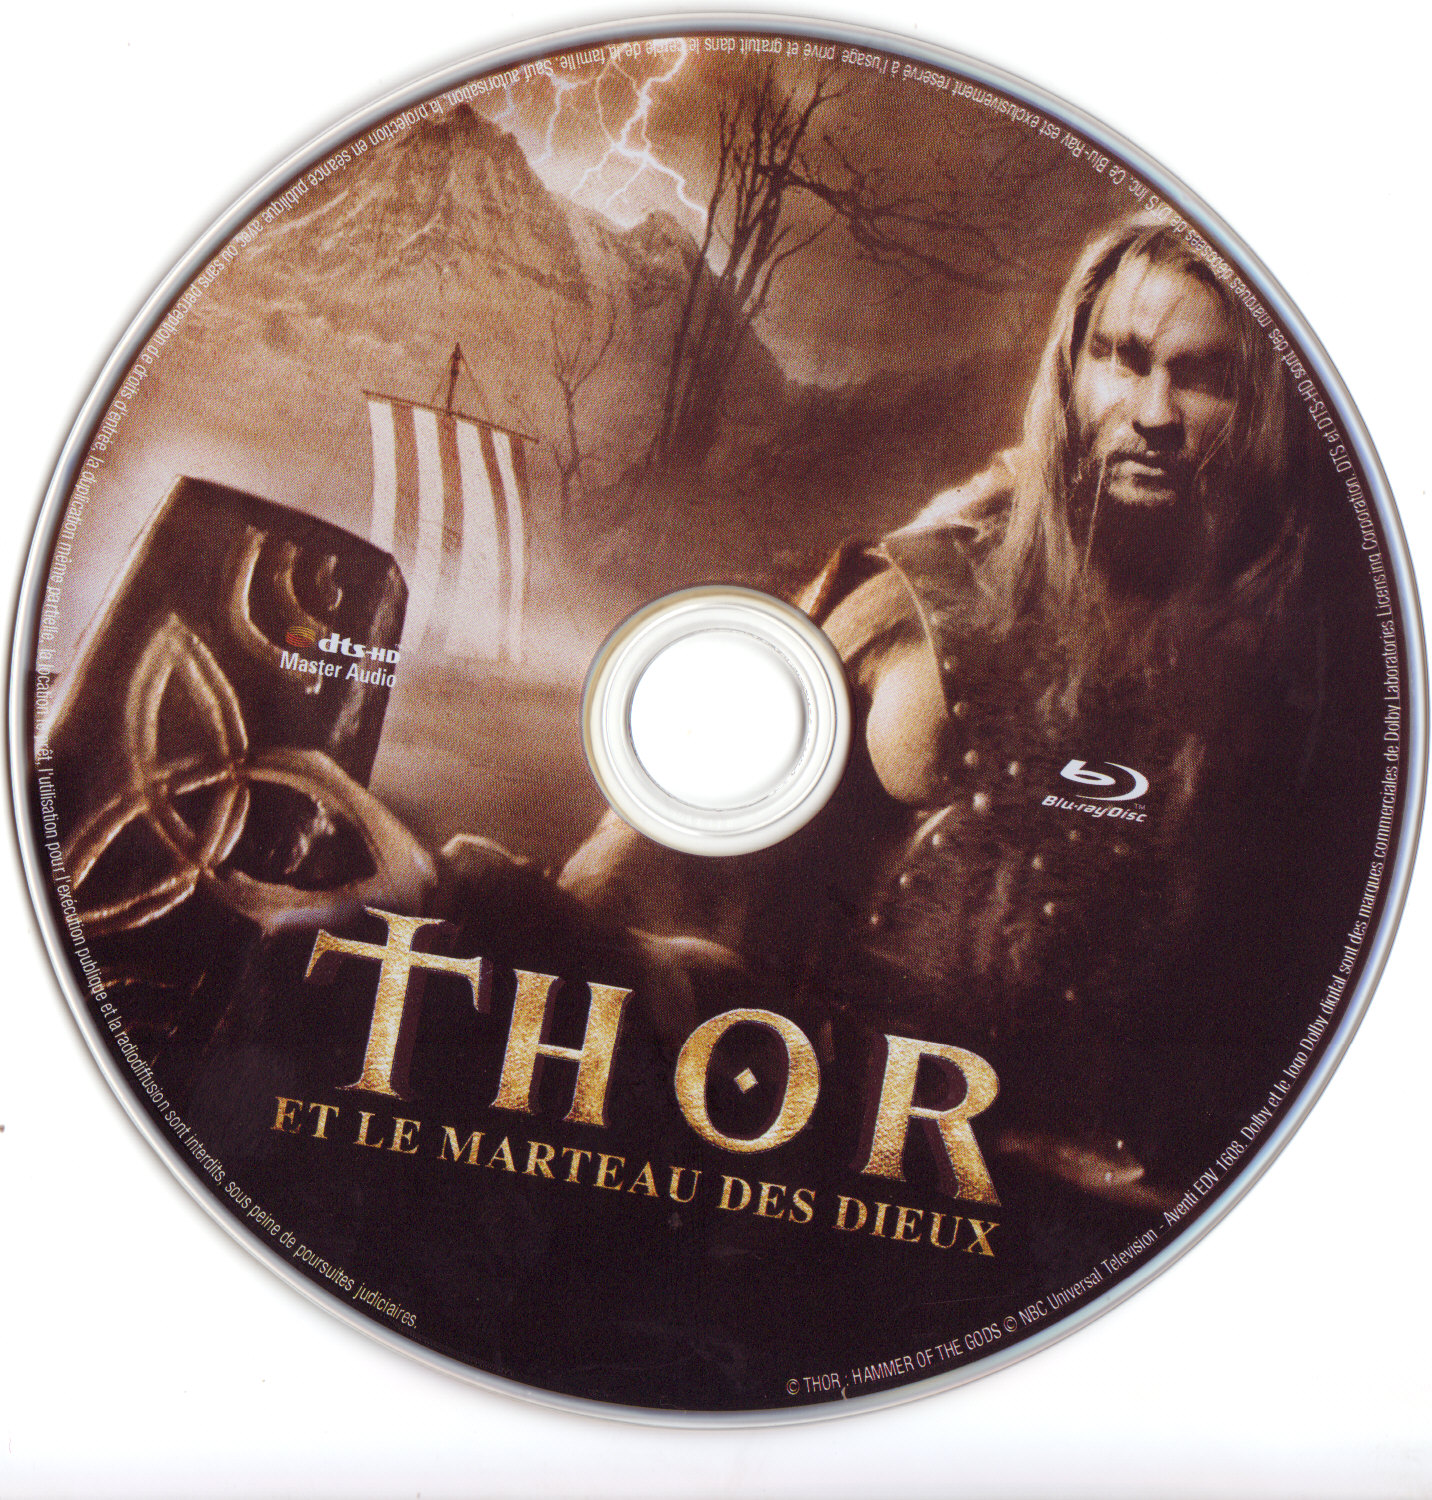 Thor et le marteau des dieux (BLU-RAY)